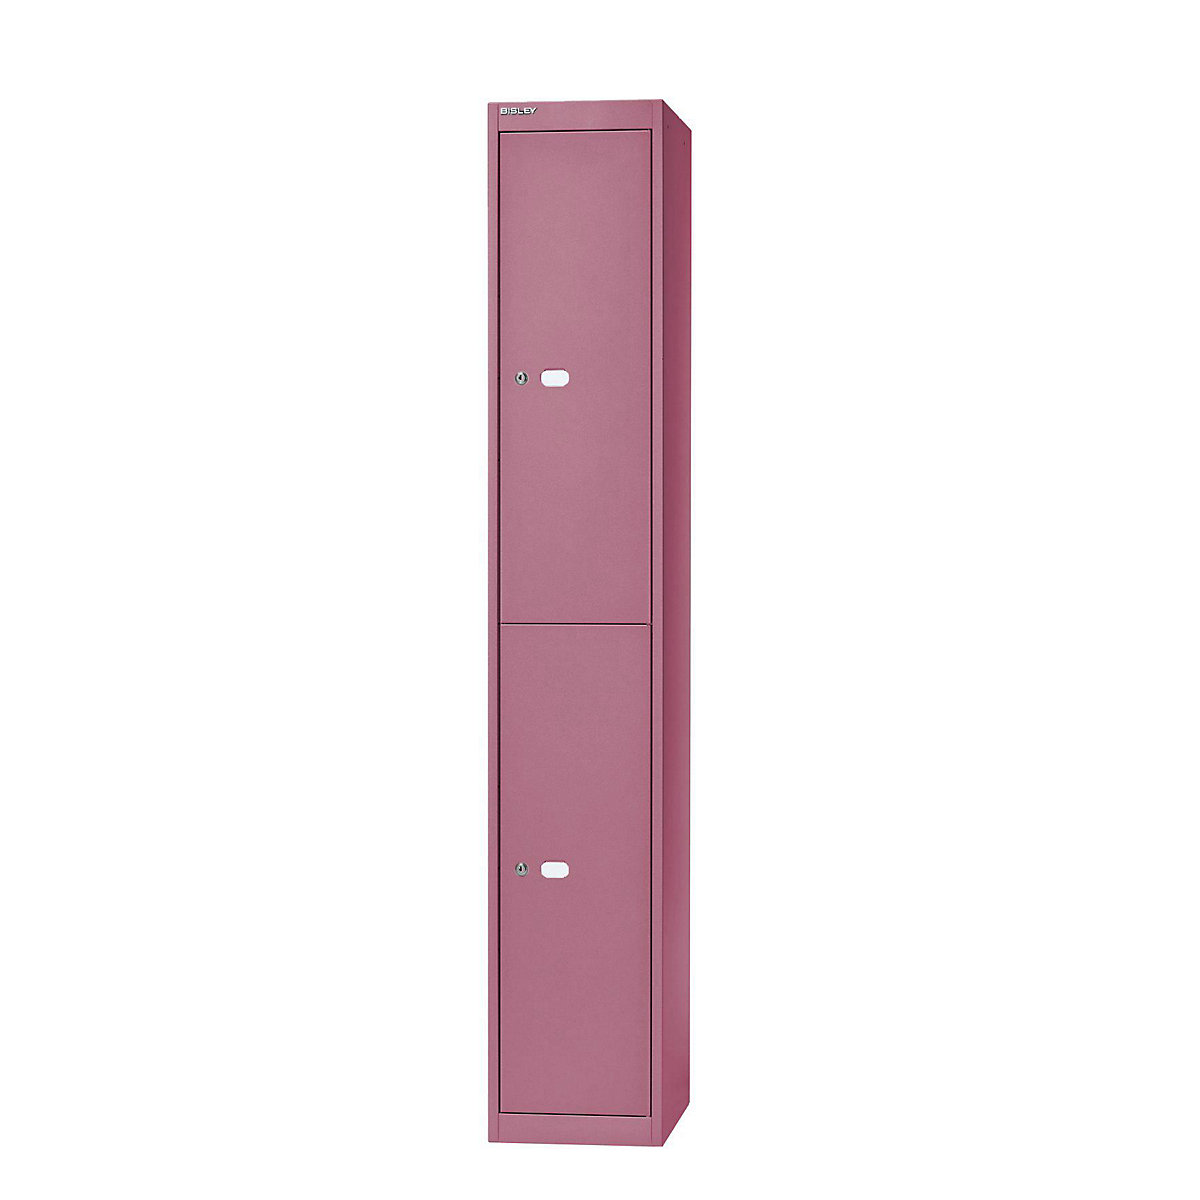 BISLEY OFFICE Garderobensystem, Tiefe 457 mm, 2 Fächer mit je 1 Kleiderhaken, pink